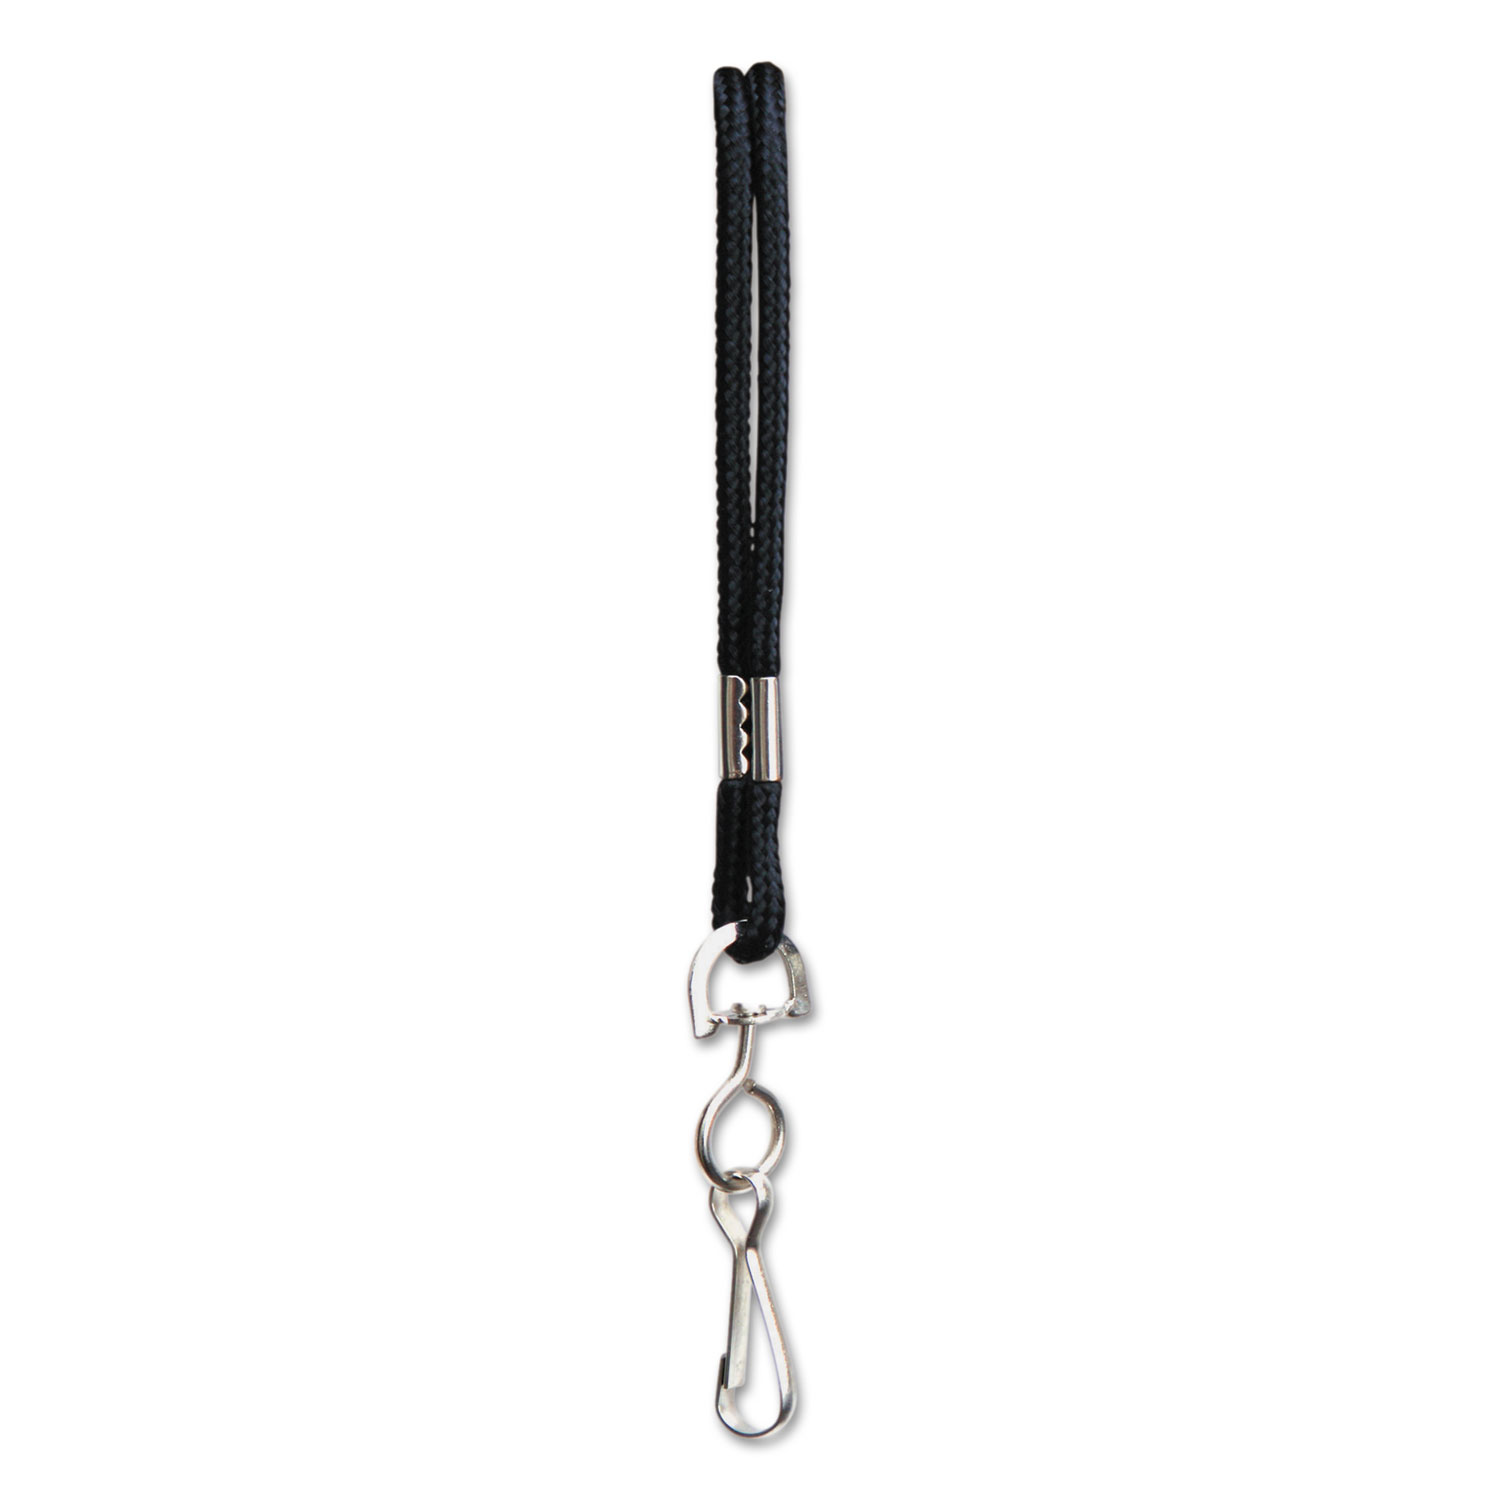 Rope Lanyard, Metal Hook Fastener, 36 Long, Nylon, Black